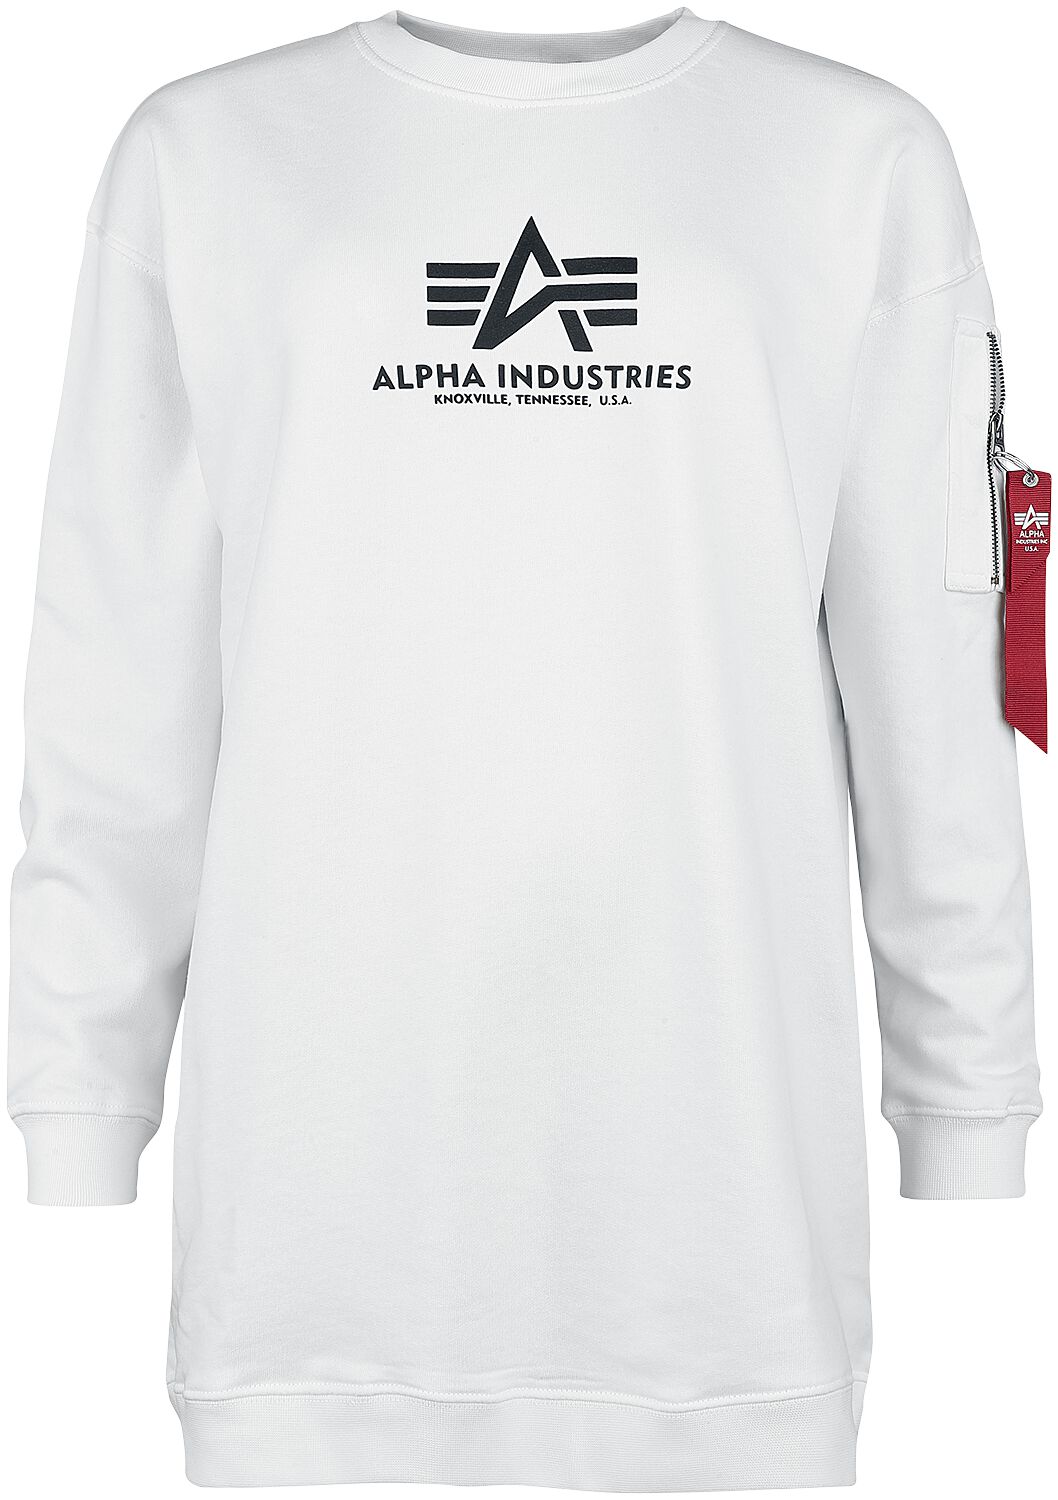 Sweat-shirt de Alpha Industries - BASIC LONG SWEATER OS WMN - XS à L - pour Femme - blanc